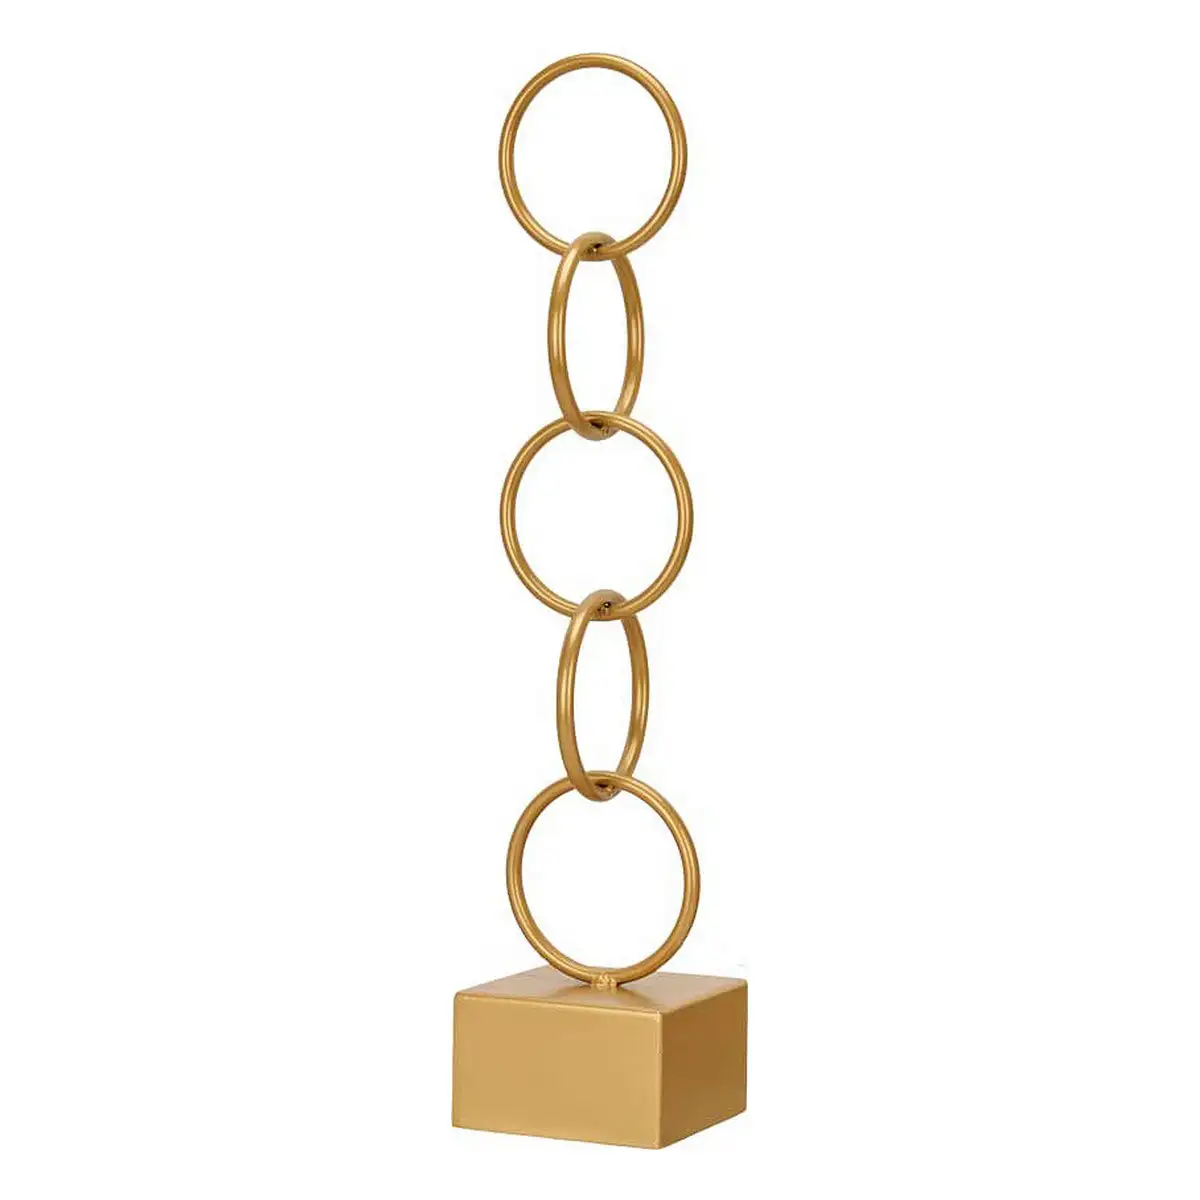 Figurine decorative anneaux dore metal 12 5 x 60 5 x 12 5 cm _7538. DIAYTAR SENEGAL - Où Choisir est un Plaisir Responsable. Explorez notre boutique en ligne et adoptez des produits qui reflètent notre engagement envers la durabilité.